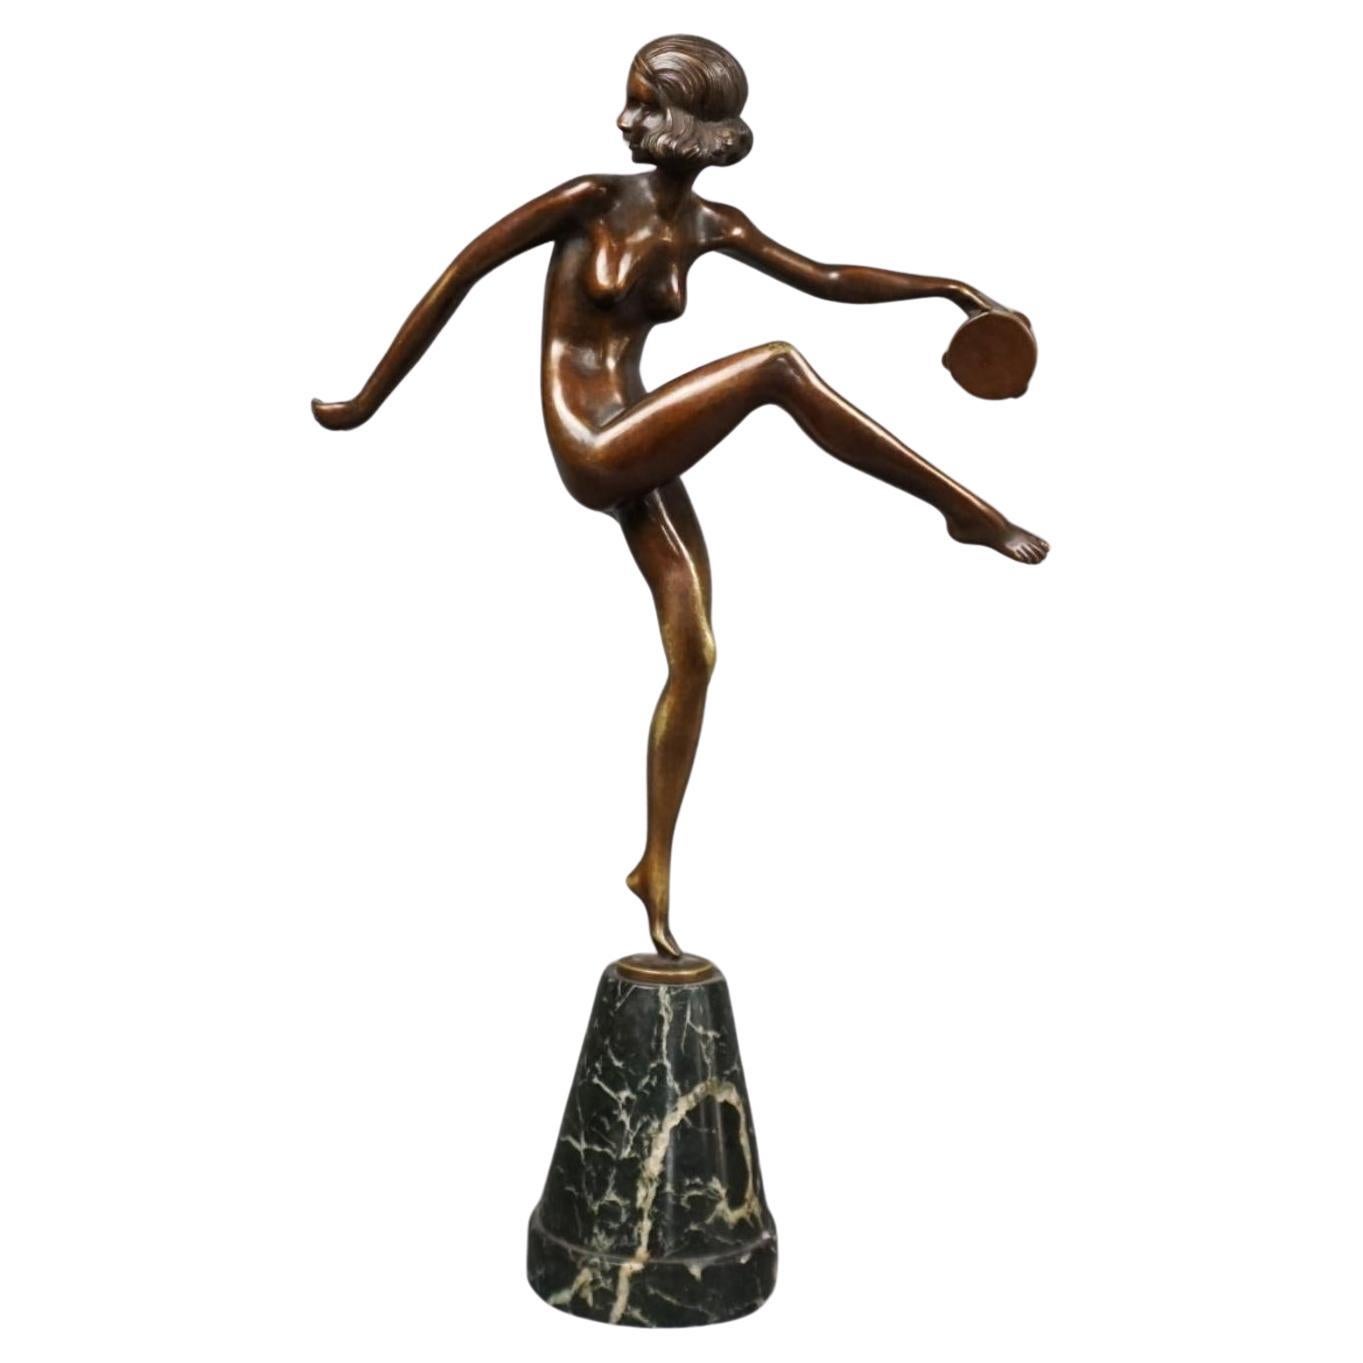 Pierre Laurel (1892-1962) Patinated Bronze Figure "Tambourine Dancer" C1925